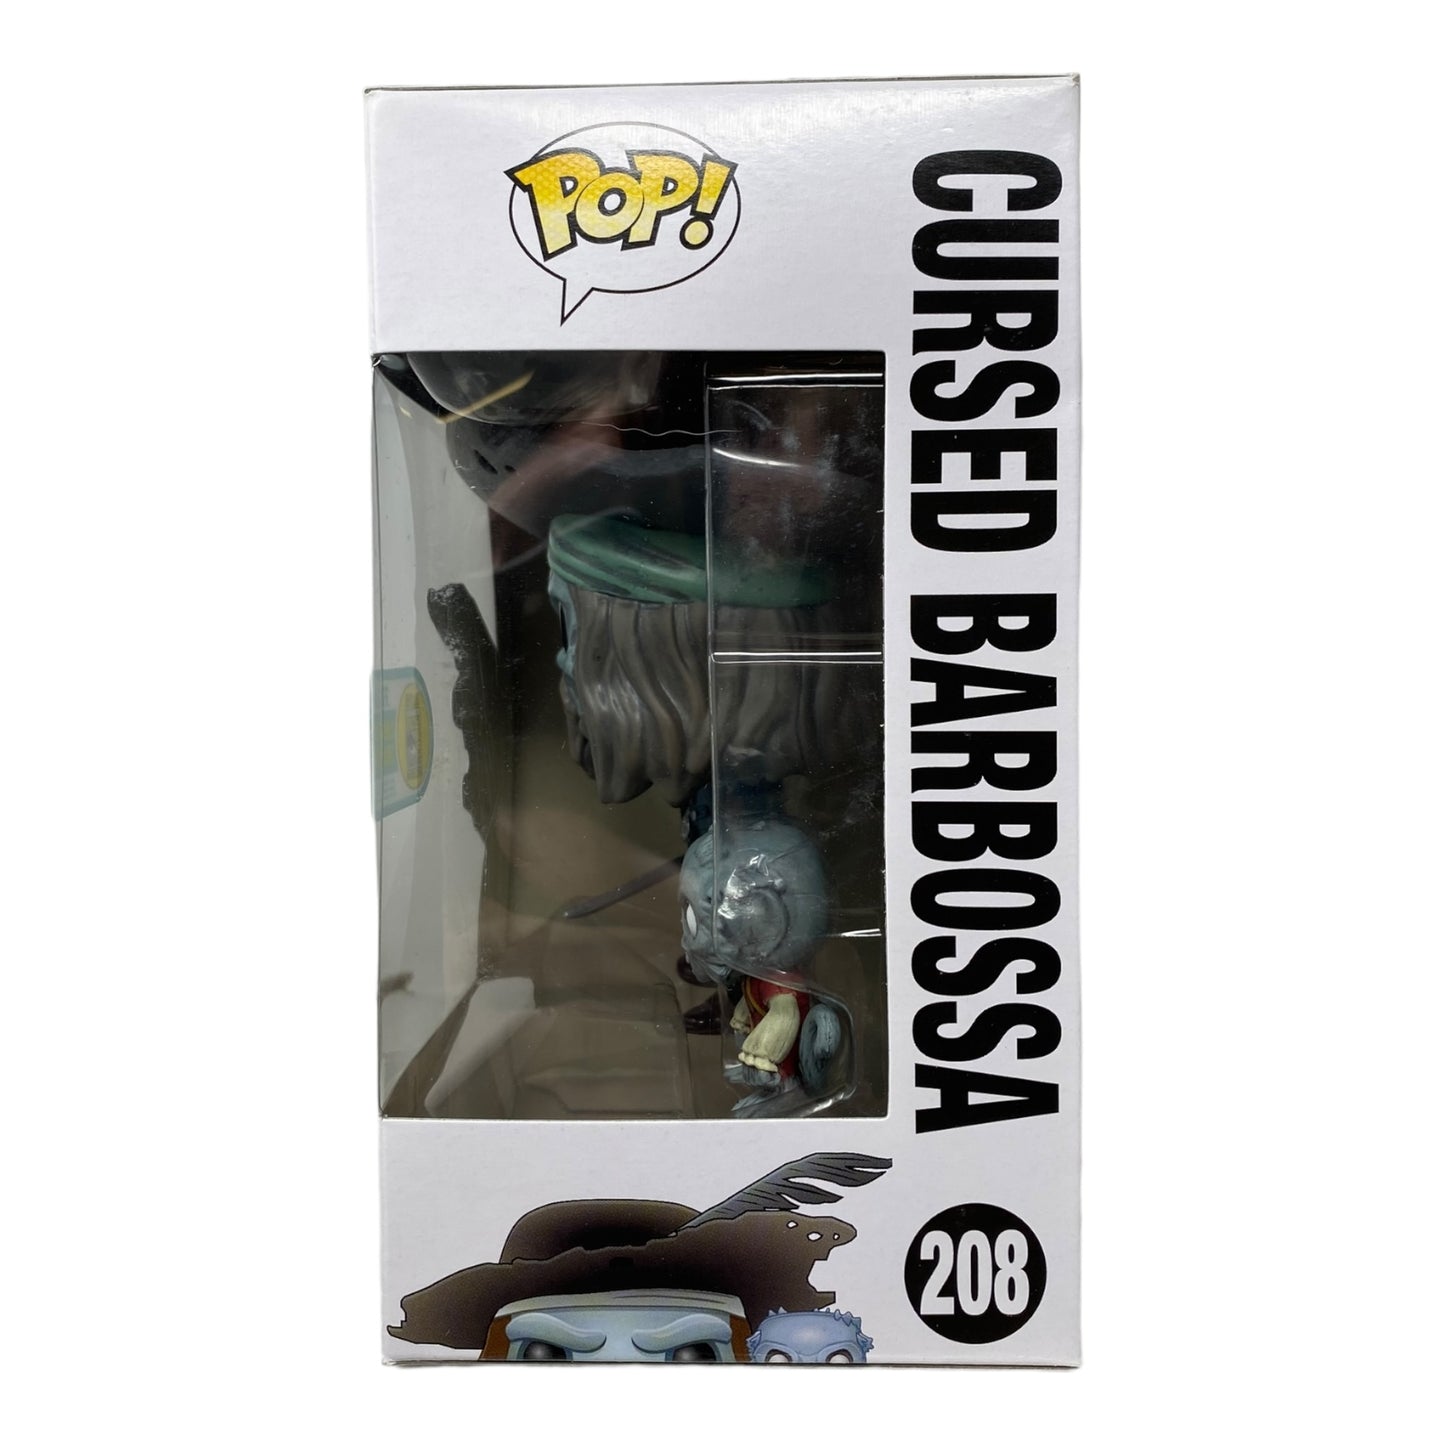 Sold 2016 - Cursed Barbossa 208, SDCC